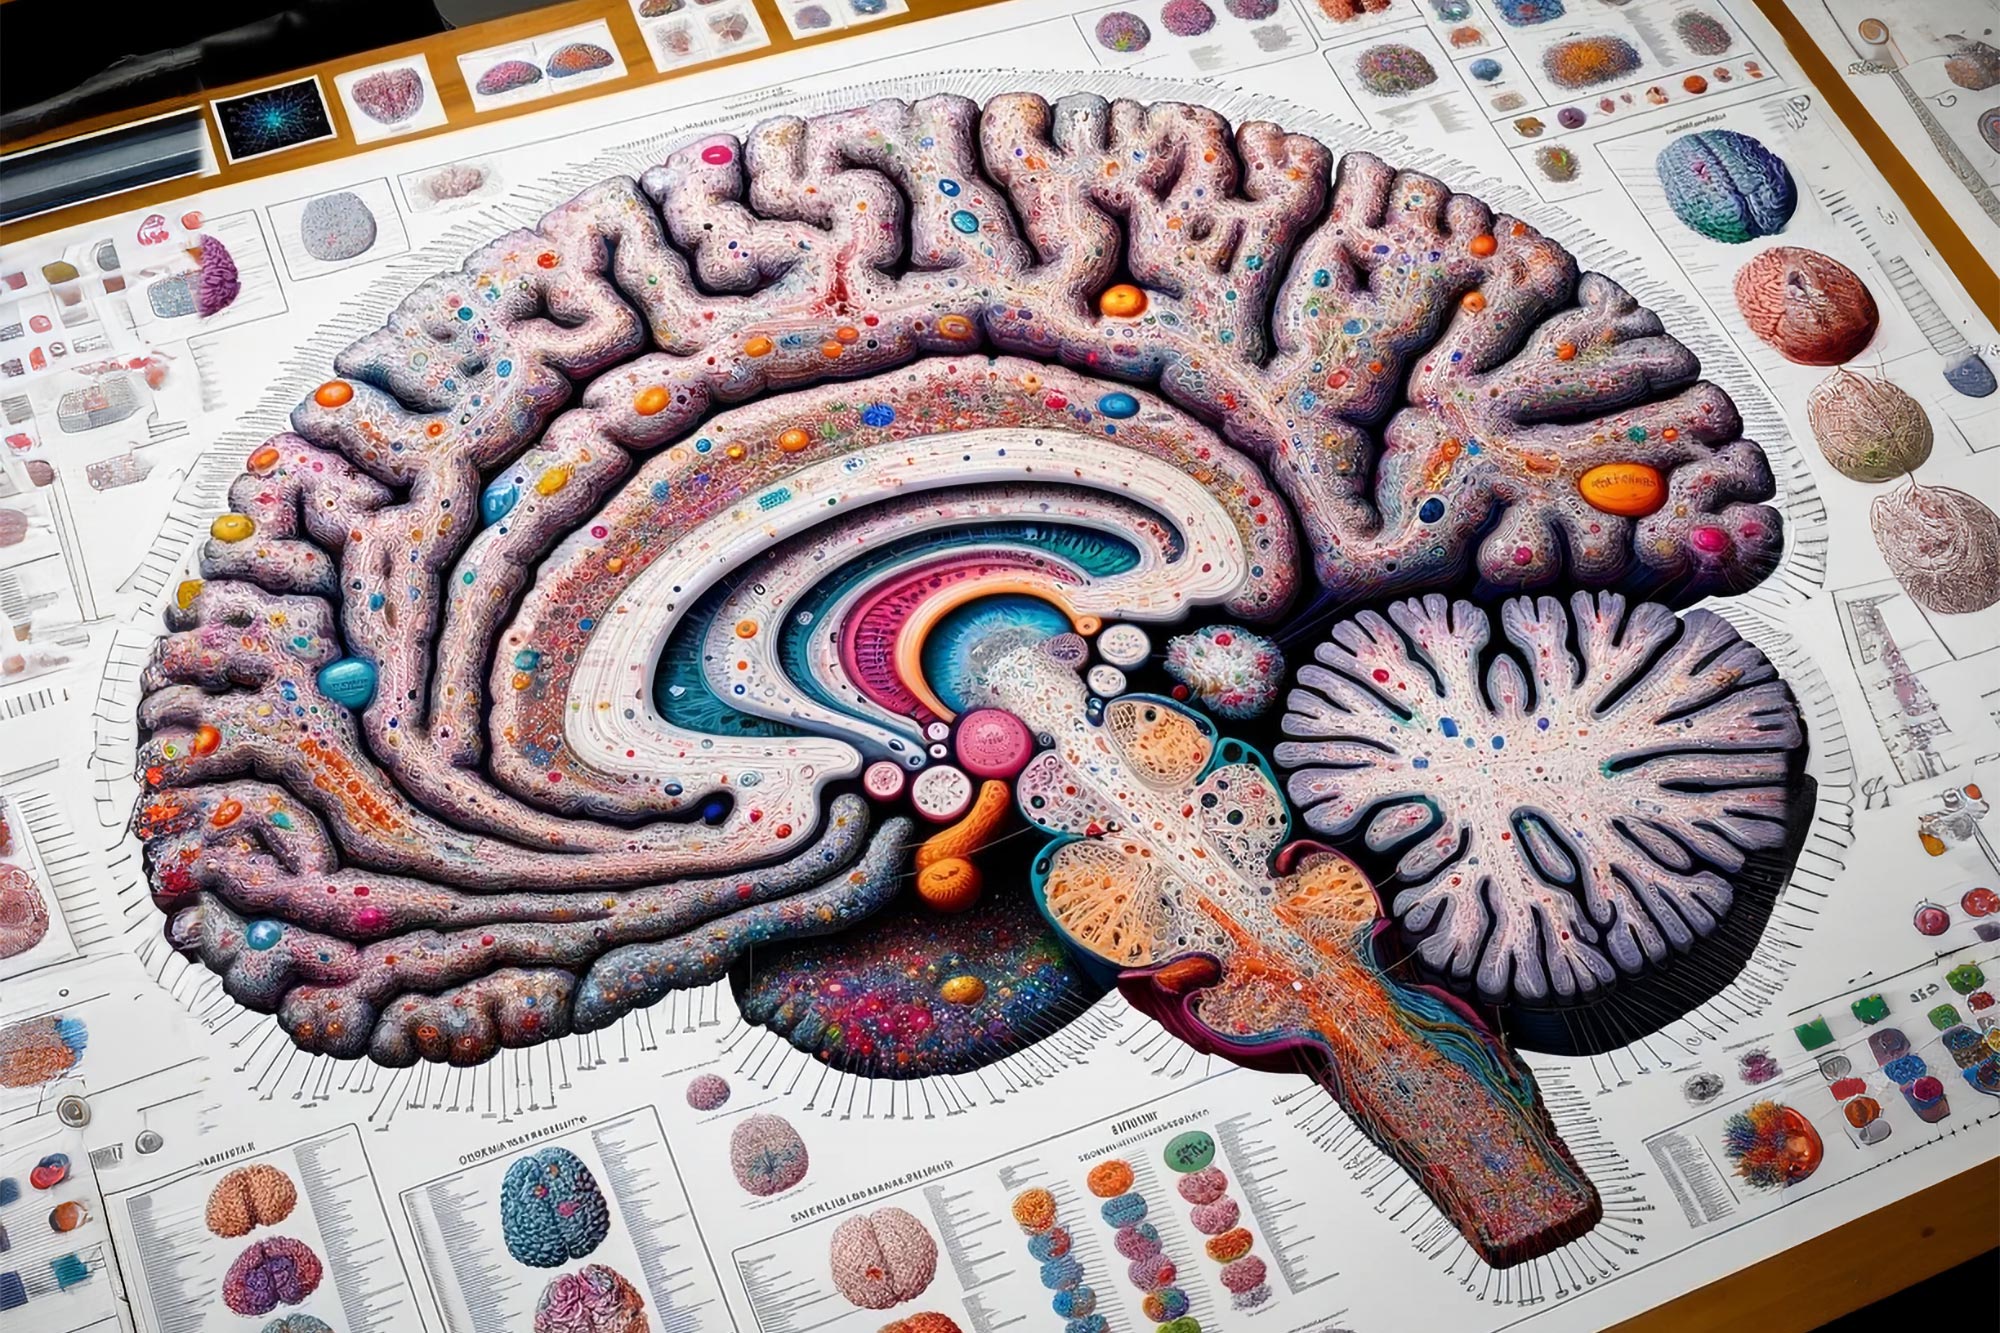 Descifrando los trastornos neuropsiquiátricos utilizando un atlas de células cerebrales humanas